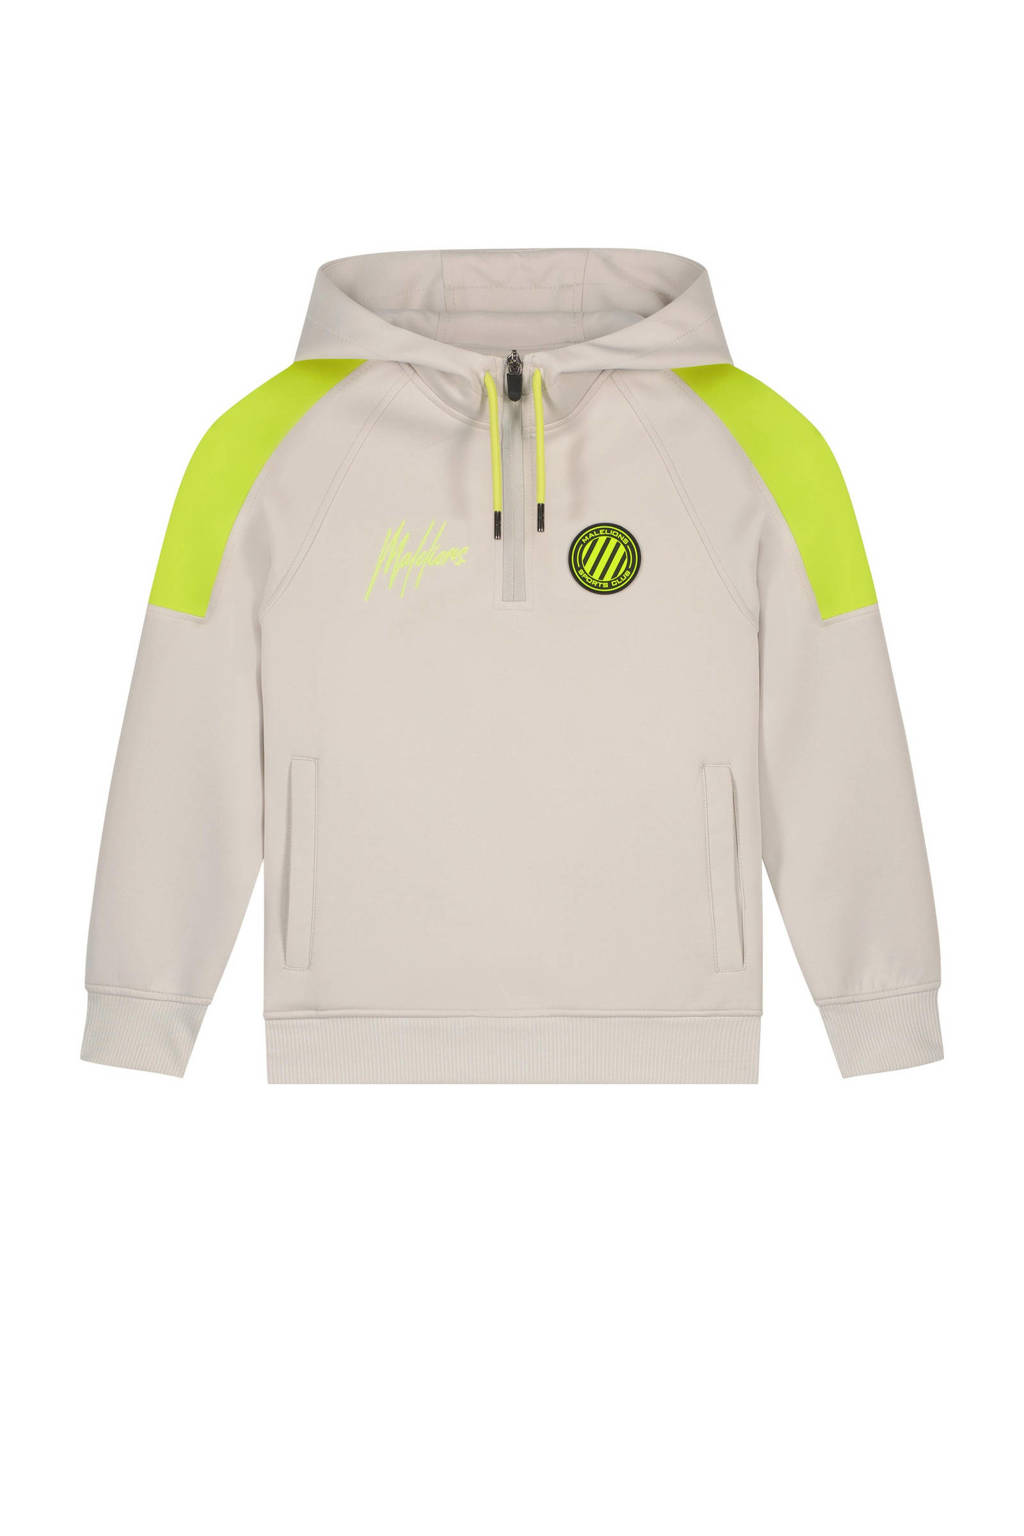 Malelions hoodie met logo grijs/geel